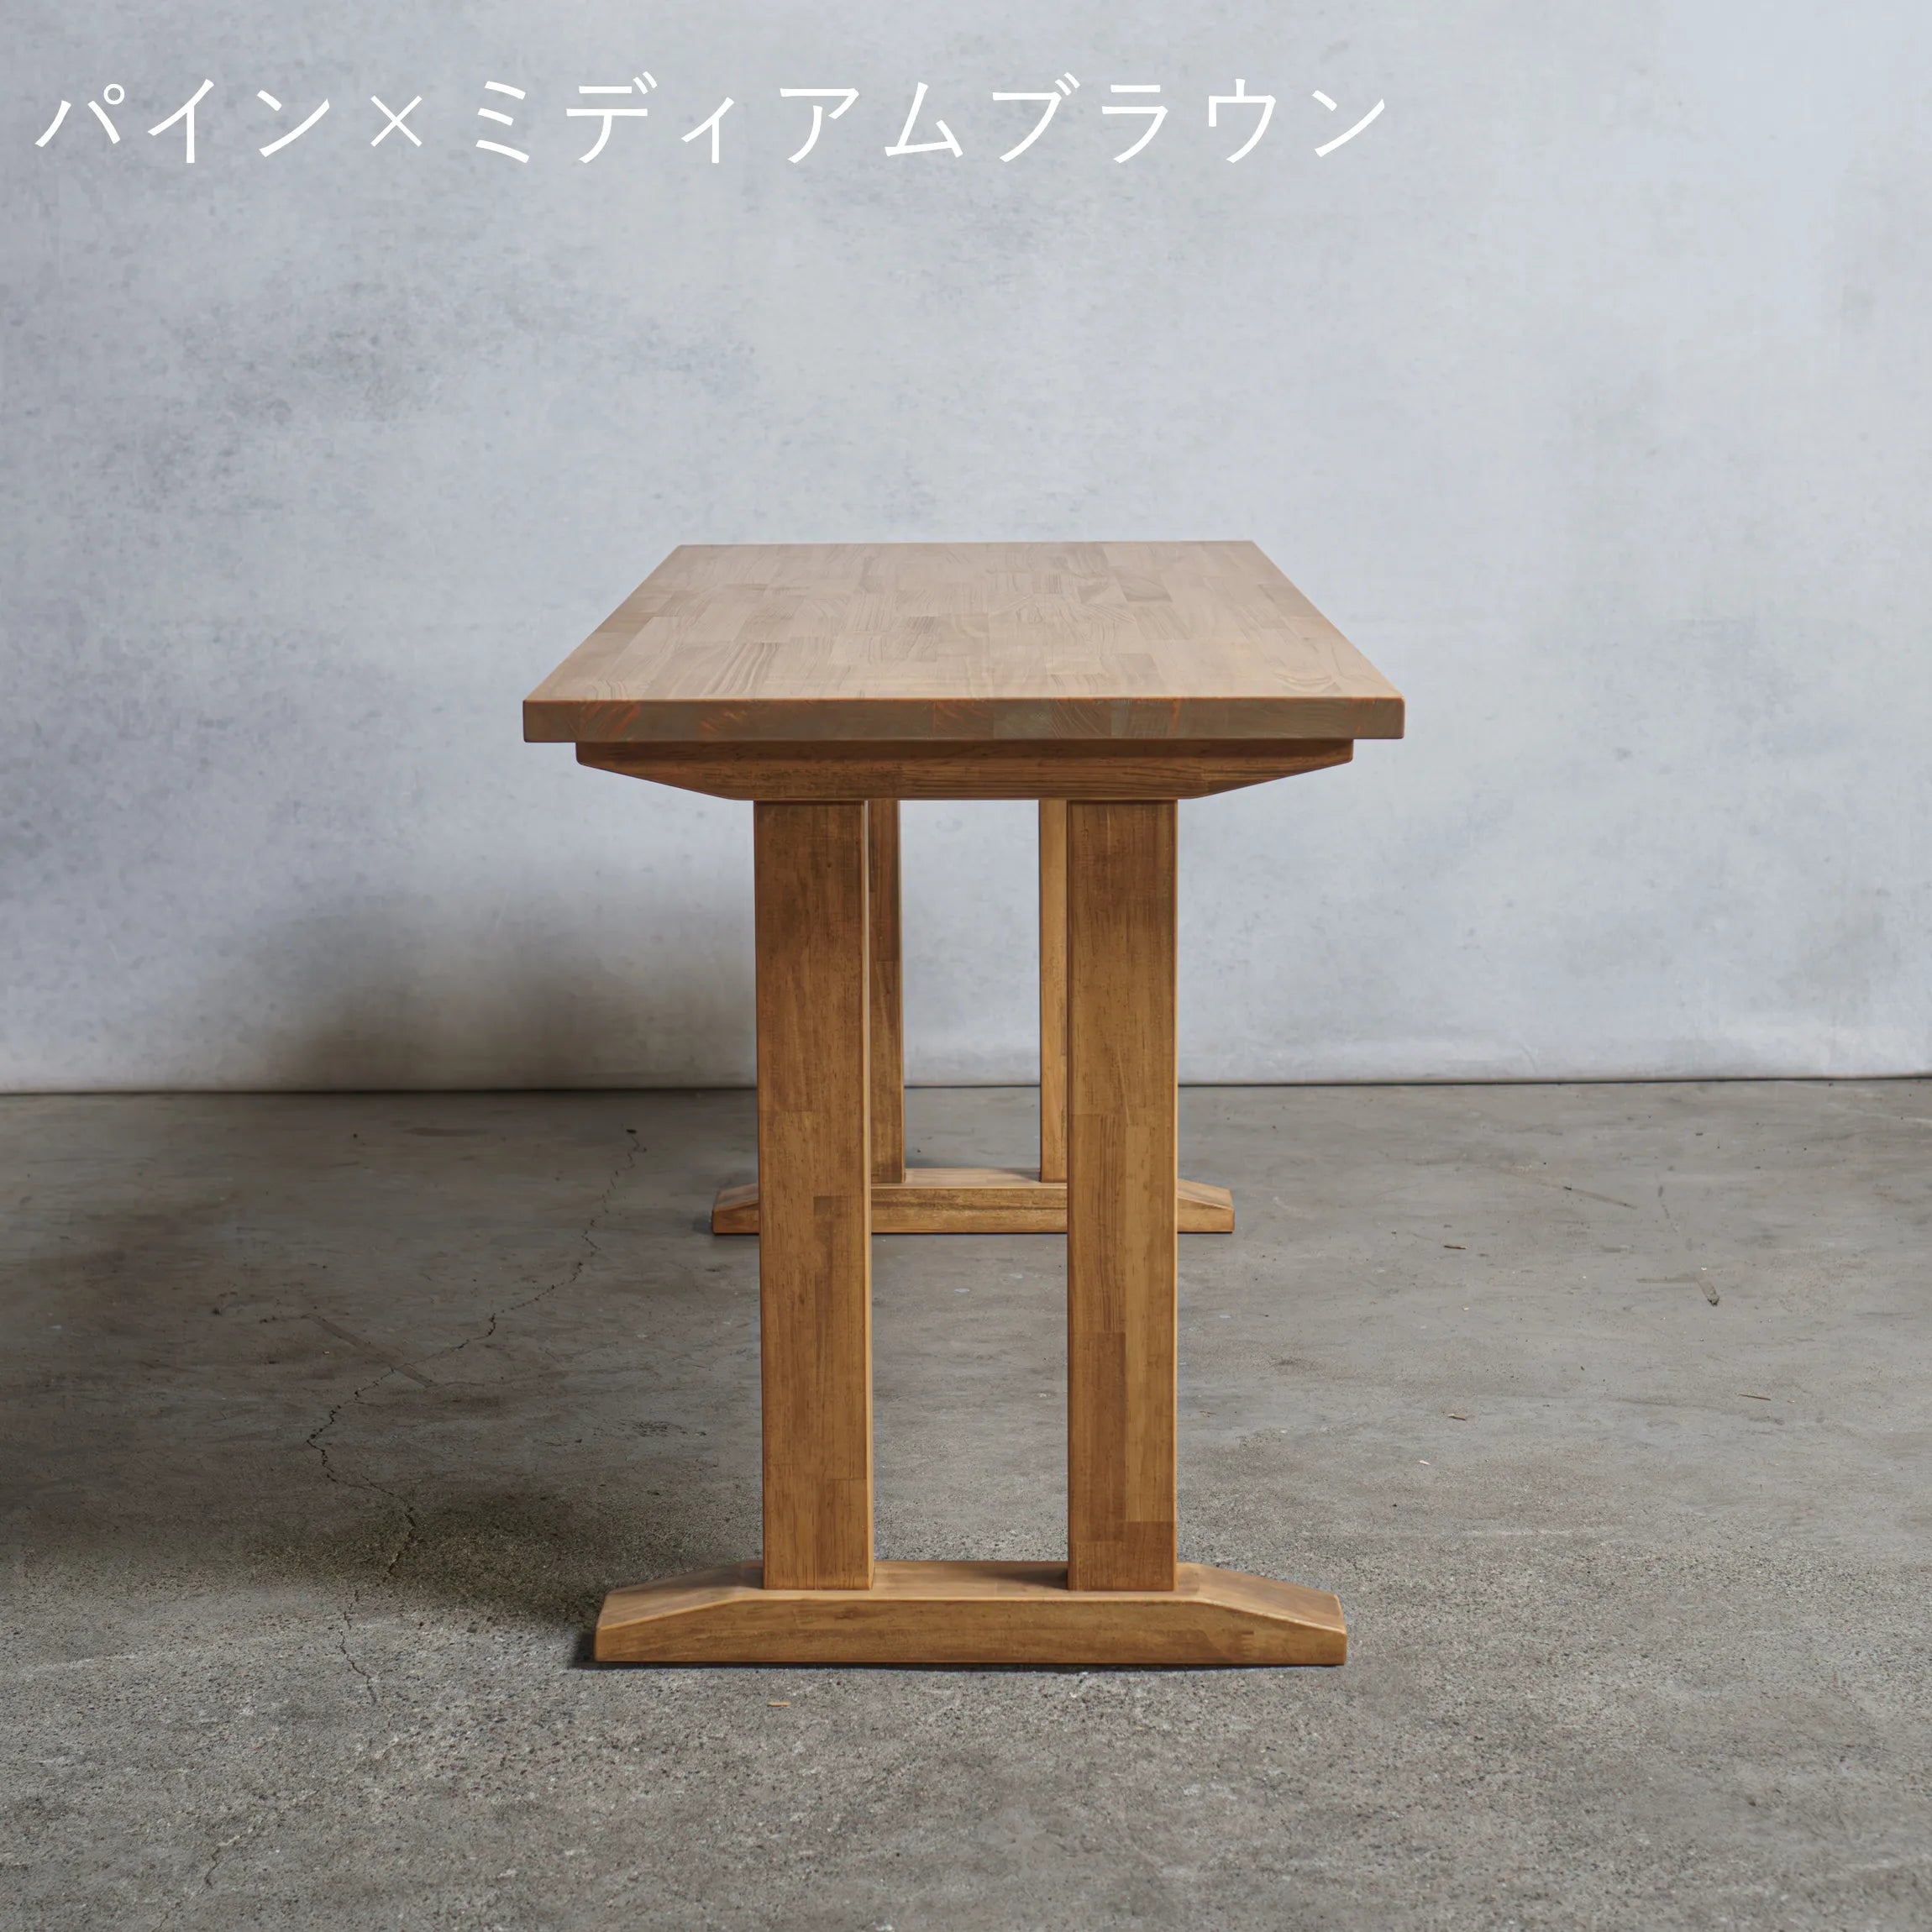 木製 オーダー テーブル / デスク  パイン材 Ⅱ型